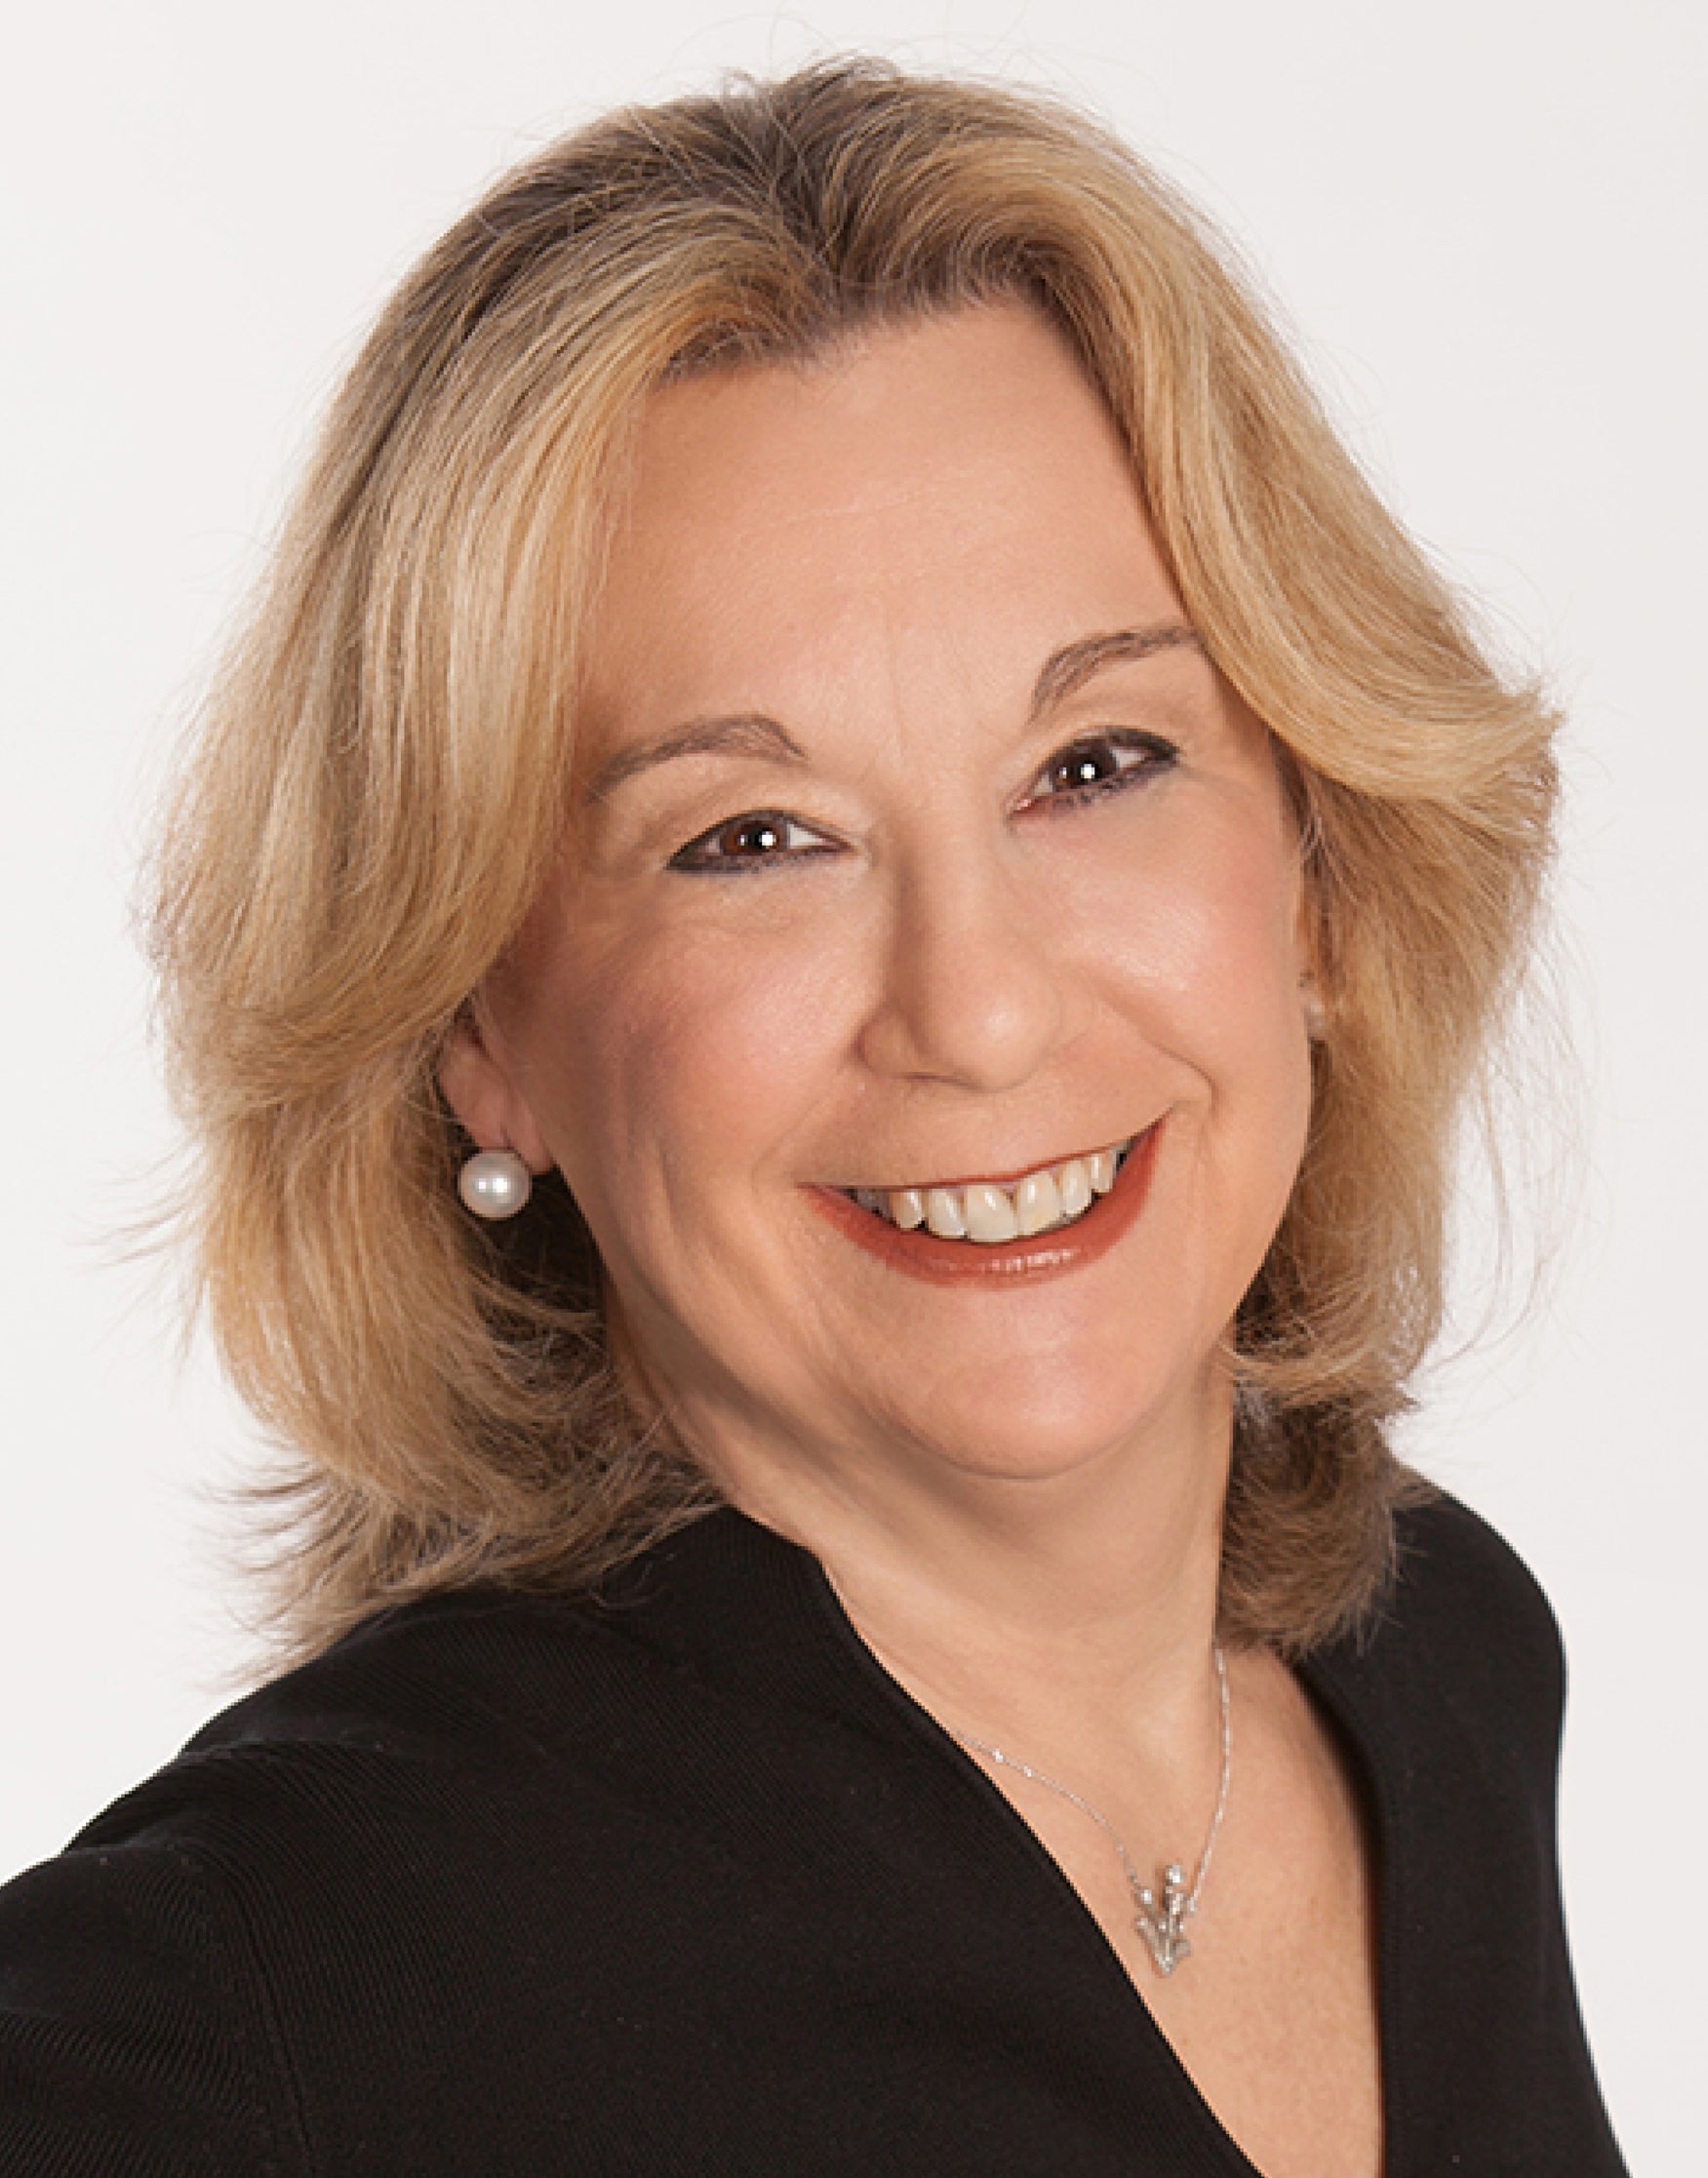 Lisa Horowitz